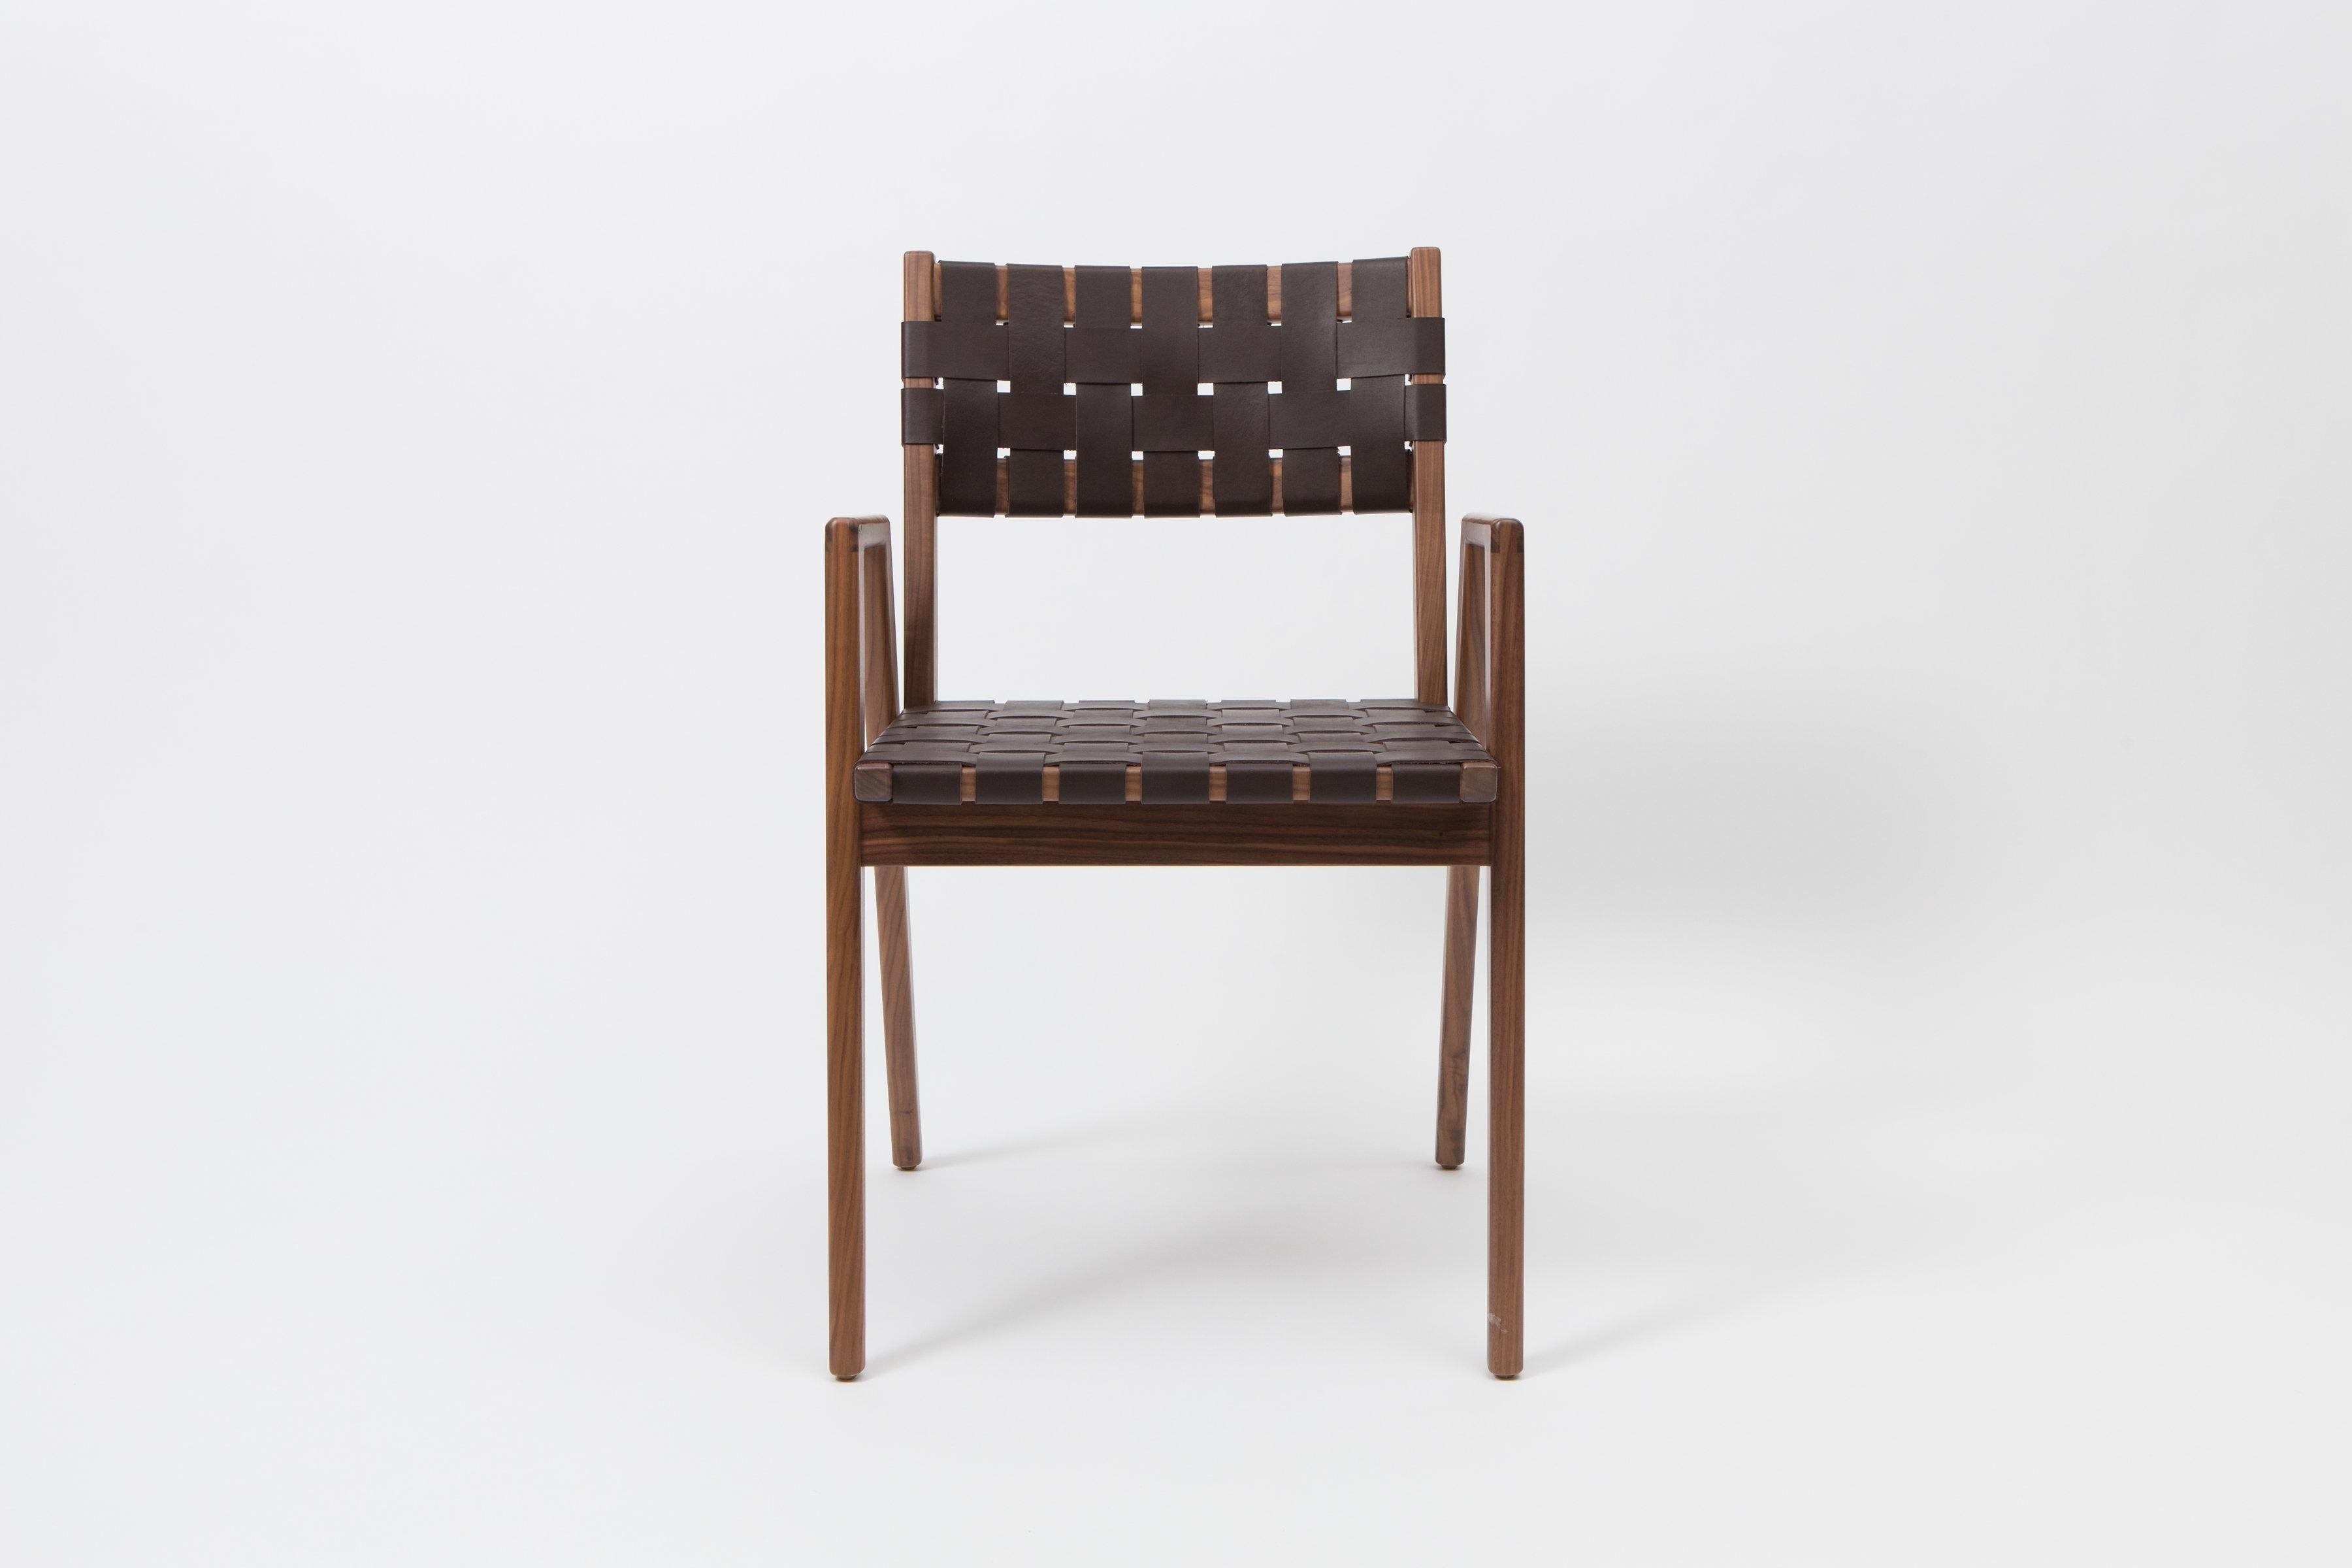 Der ursprünglich 1956 von Mel Smilow entworfene und 2016 von seiner Tochter Judy Smilow offiziell wieder eingeführte Esstischsessel aus geflochtenem Leder ist ein Klassiker der Jahrhundertmitte. Die schlichte Schönheit, die feine Handwerkskunst und